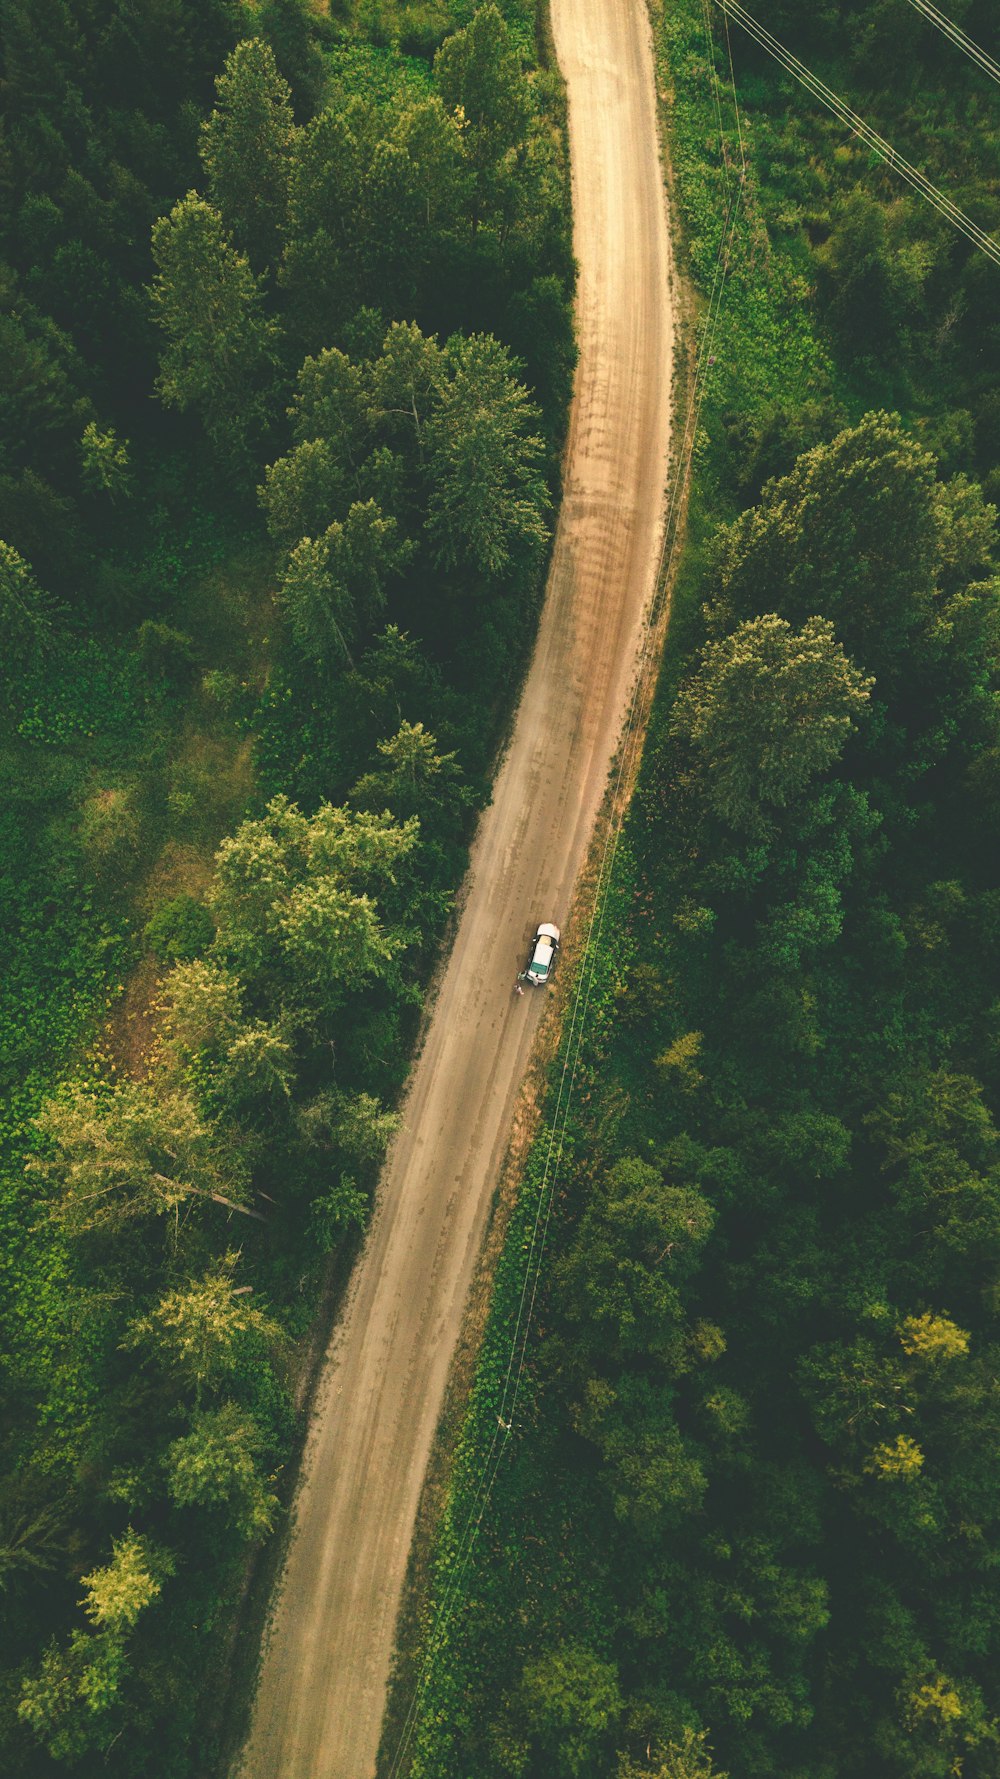 Vue aérienne de la route au milieu des arbres verts